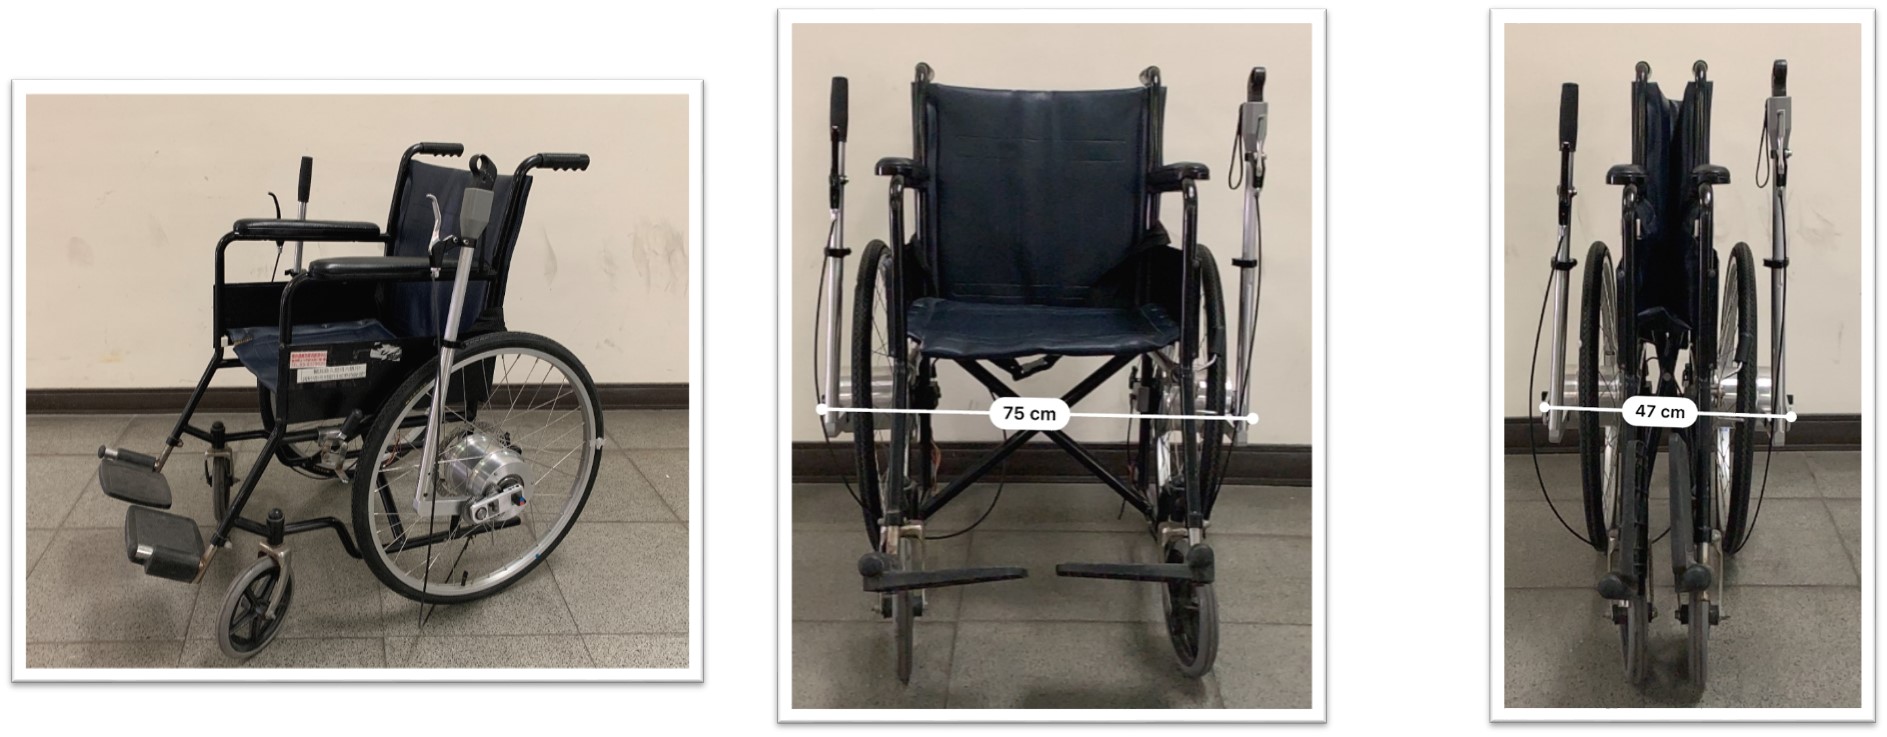 模組式雙動力輸入裝置之推桿式輪椅作品照片